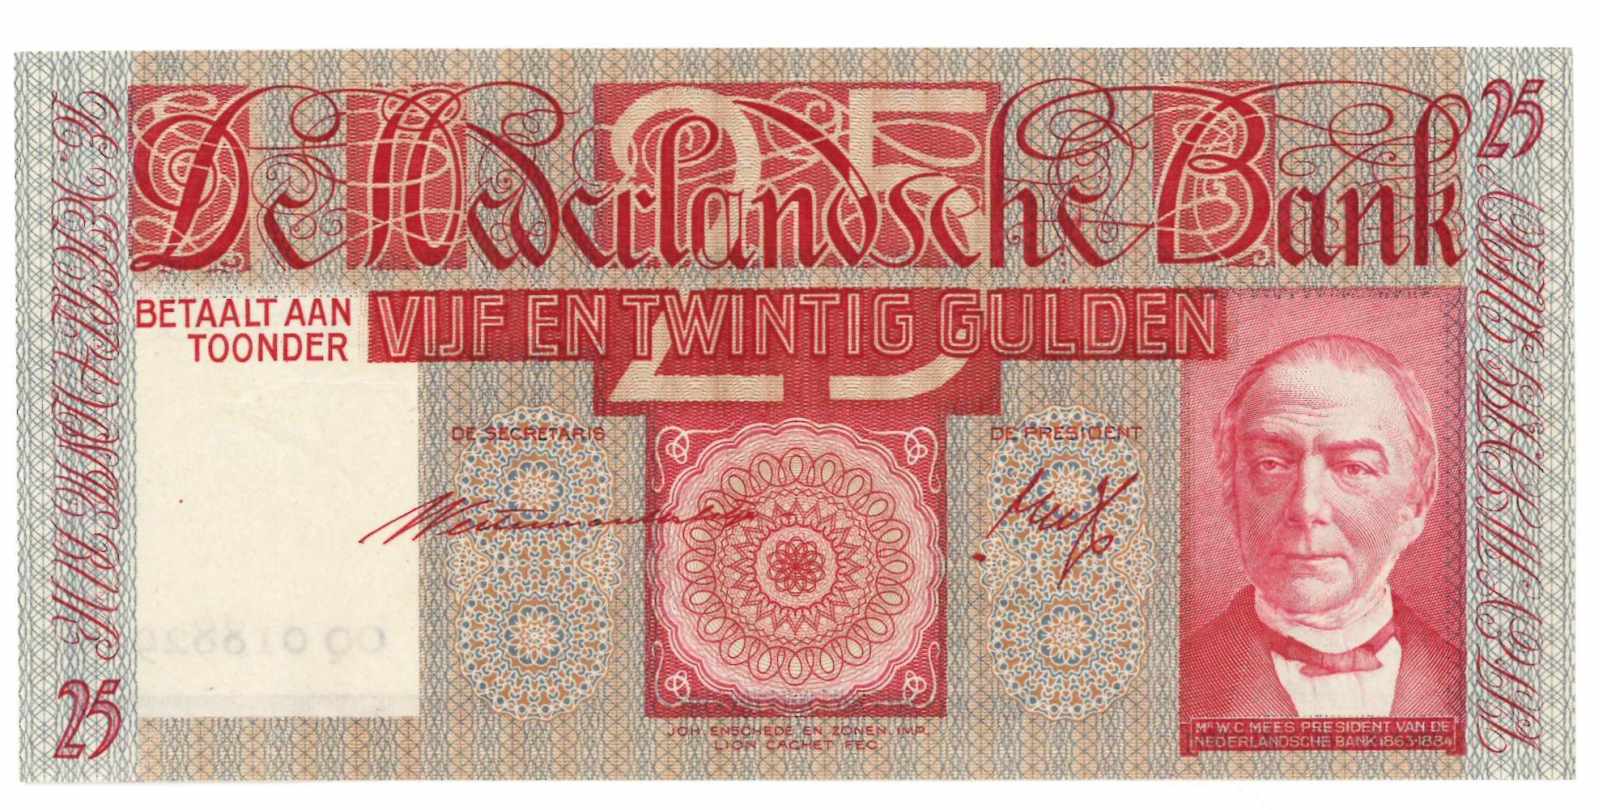 Nederland. 25 gulden. Bankbiljet. Type 1931. Mees - Nagenoeg UNC. (Alm. 76-2. AV. 48.2d).